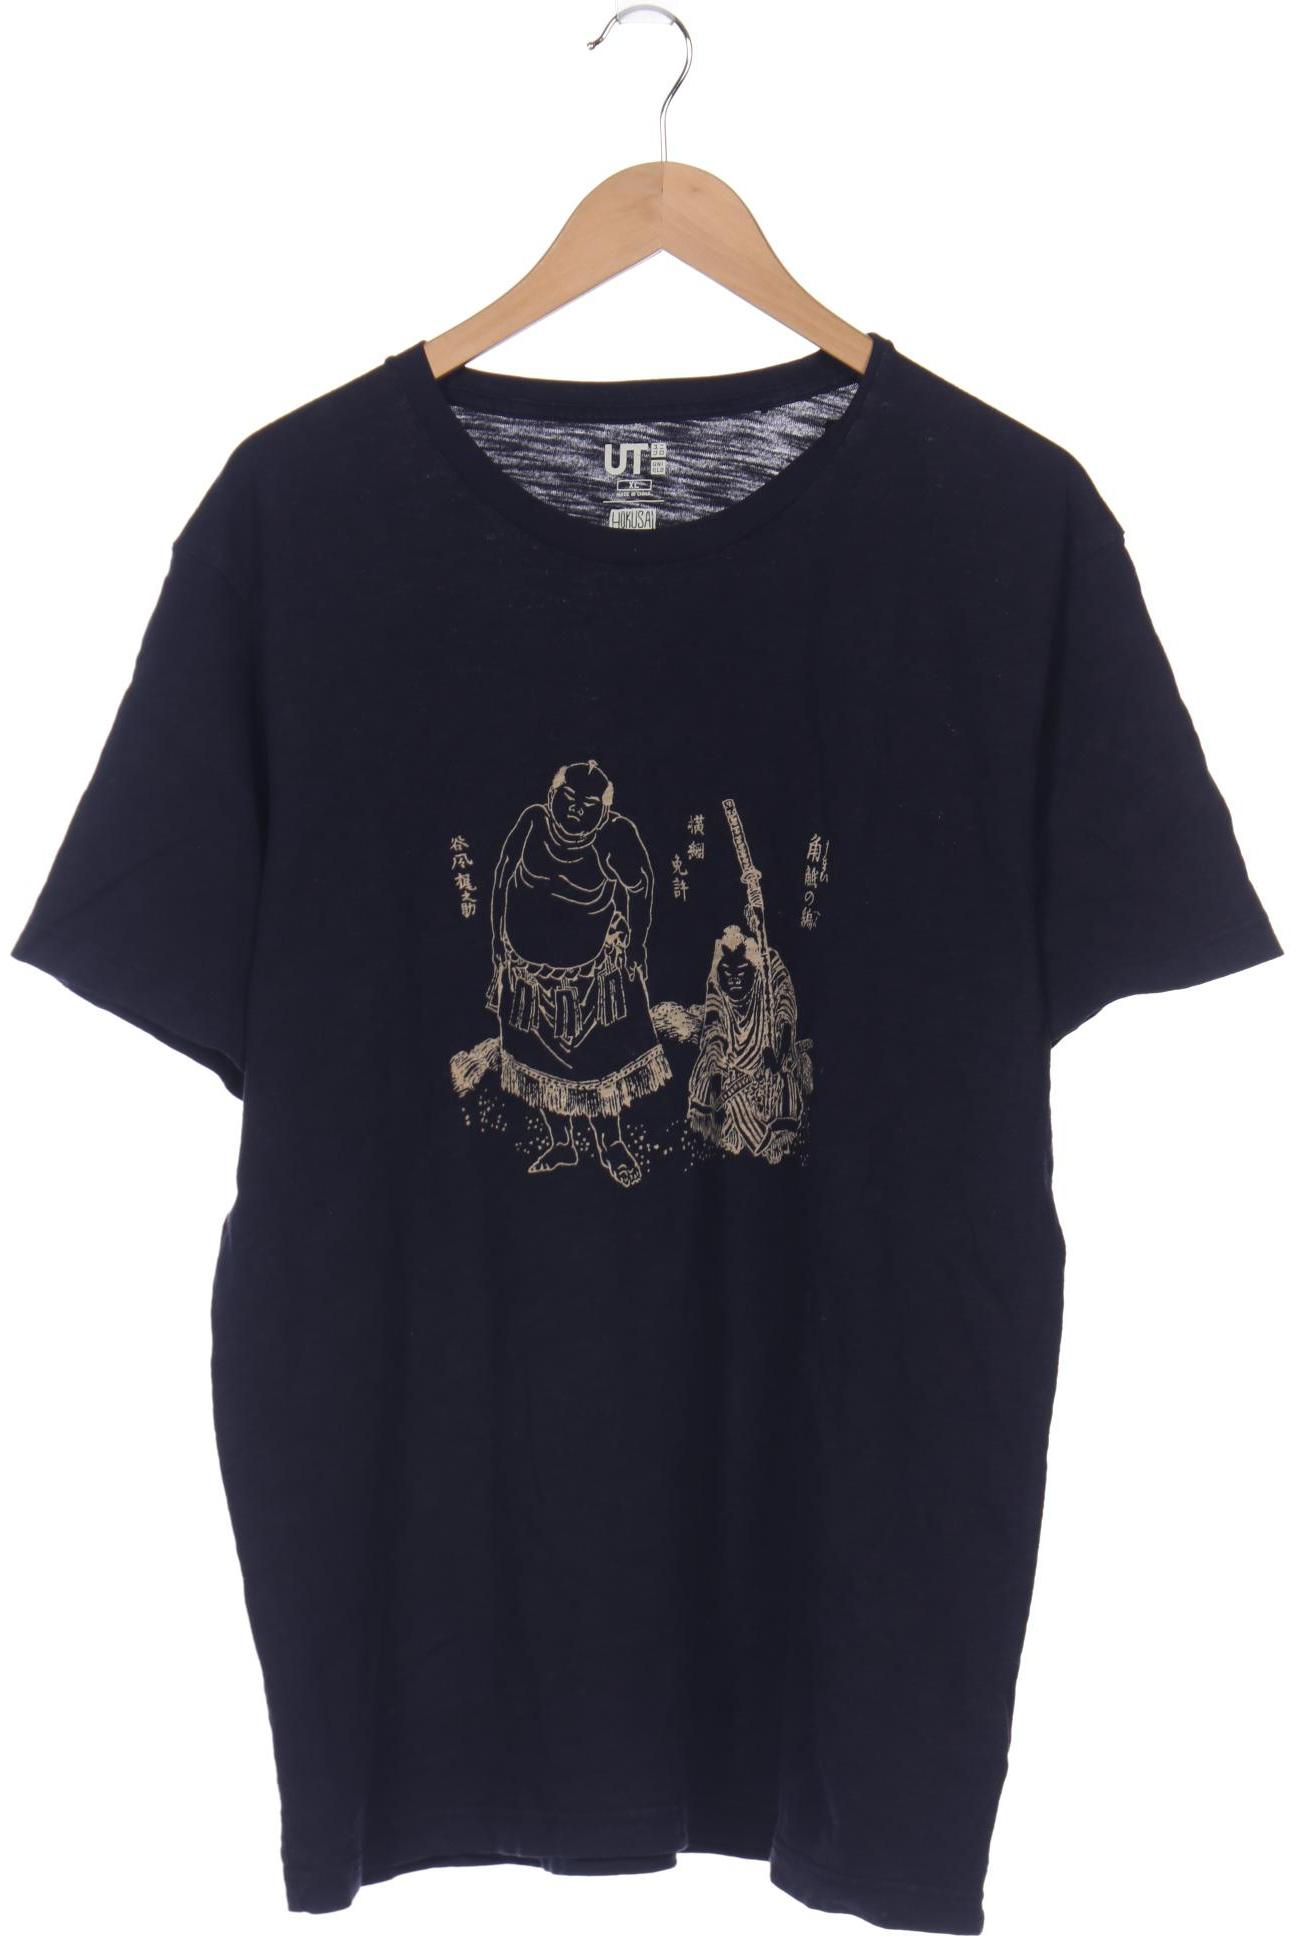 uniqlo Herren T-Shirt, marineblau, Gr. 54 von uniqlo